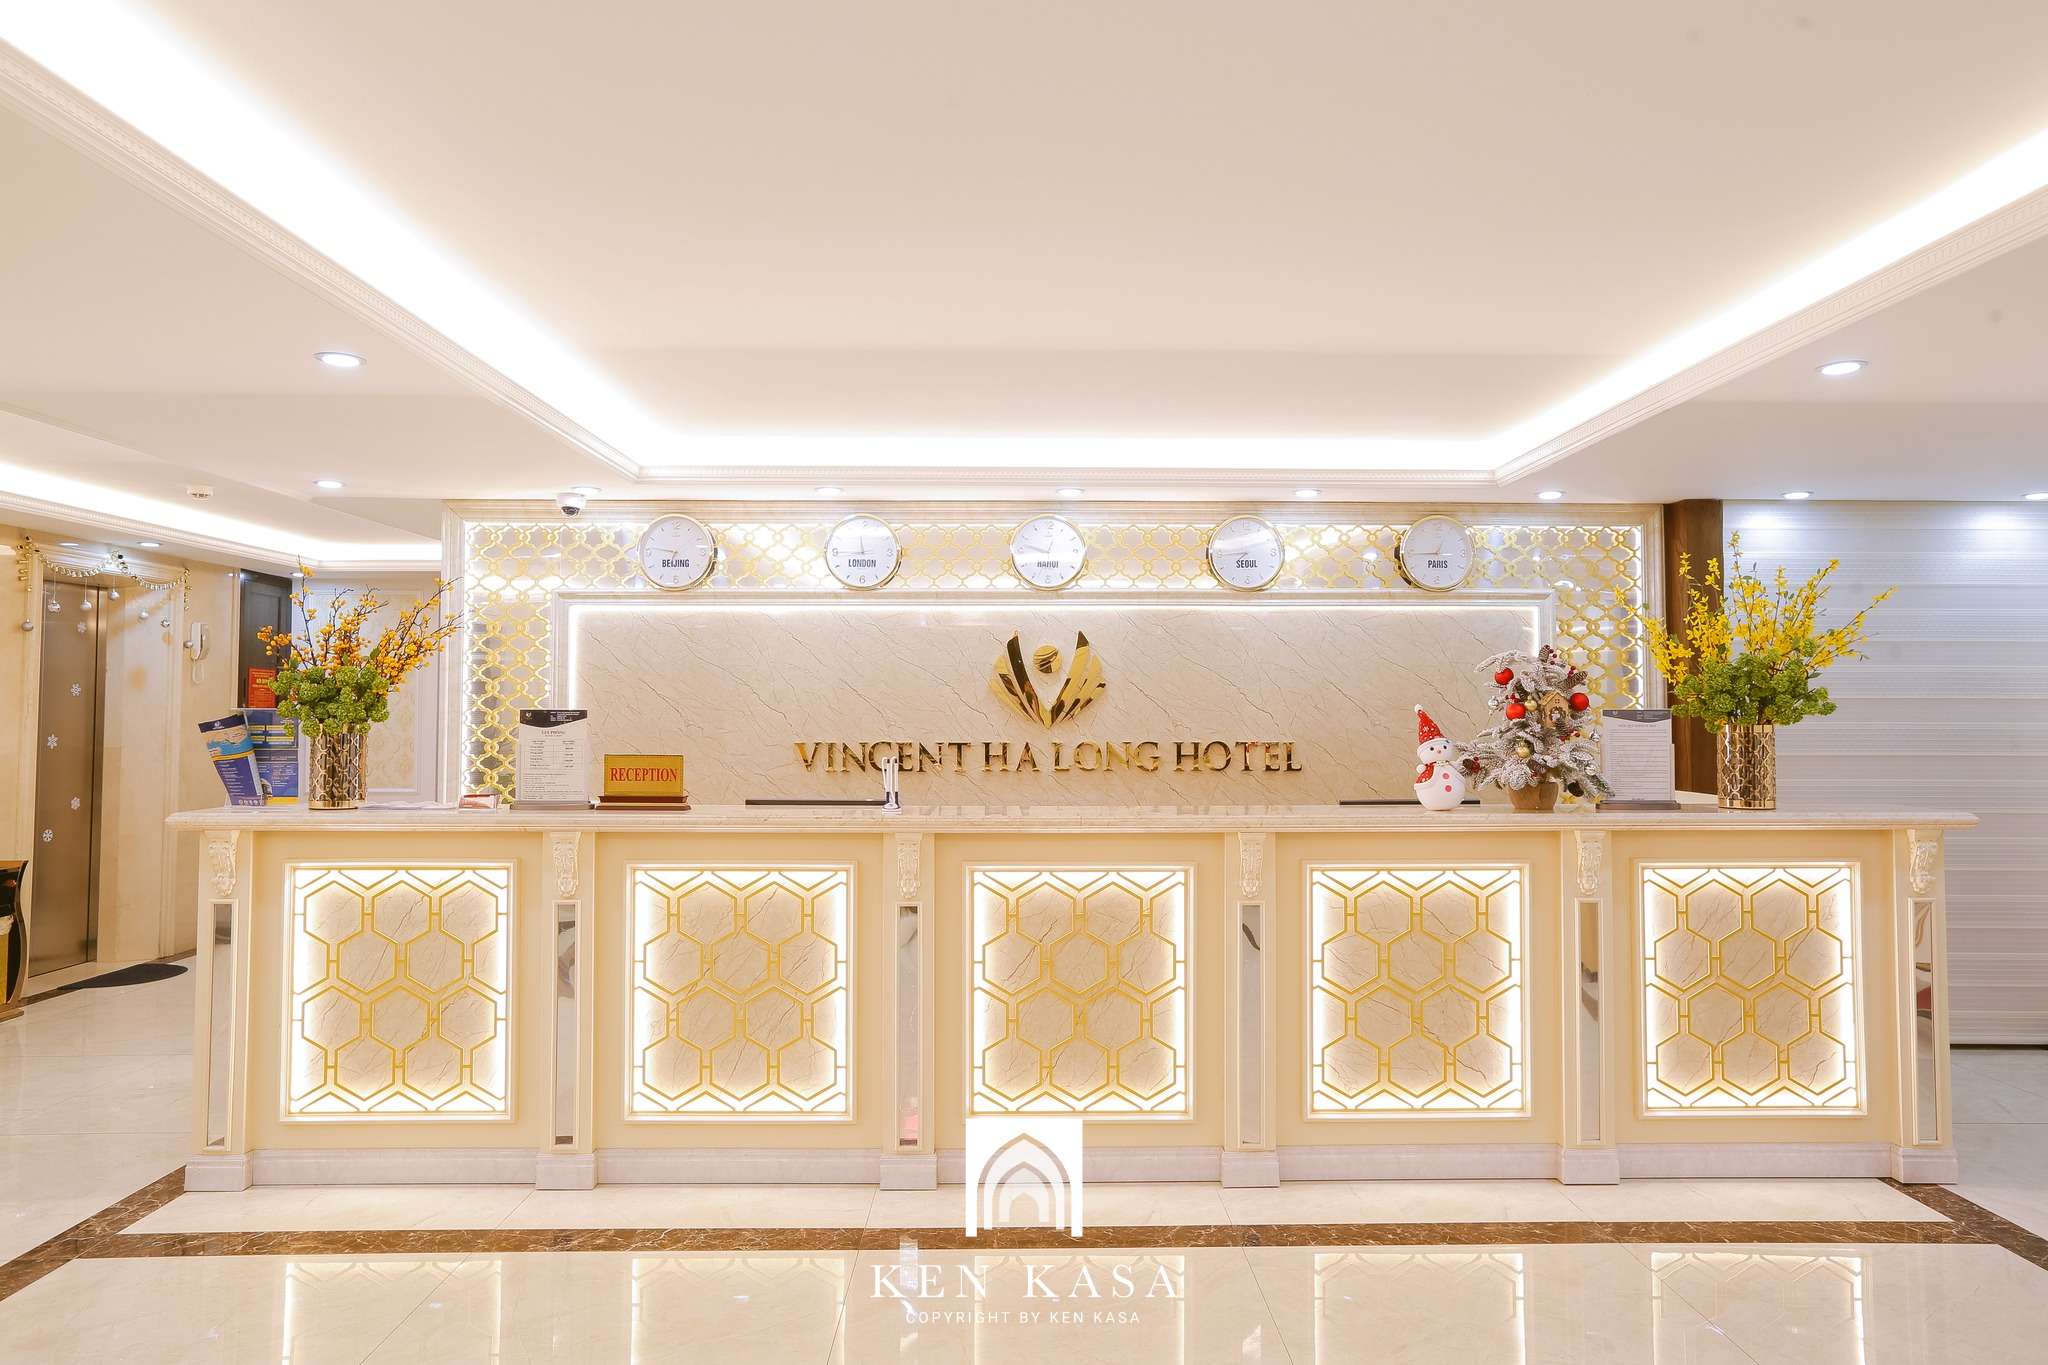 Quầy lễ tân của Vincent Ha Long Hotel